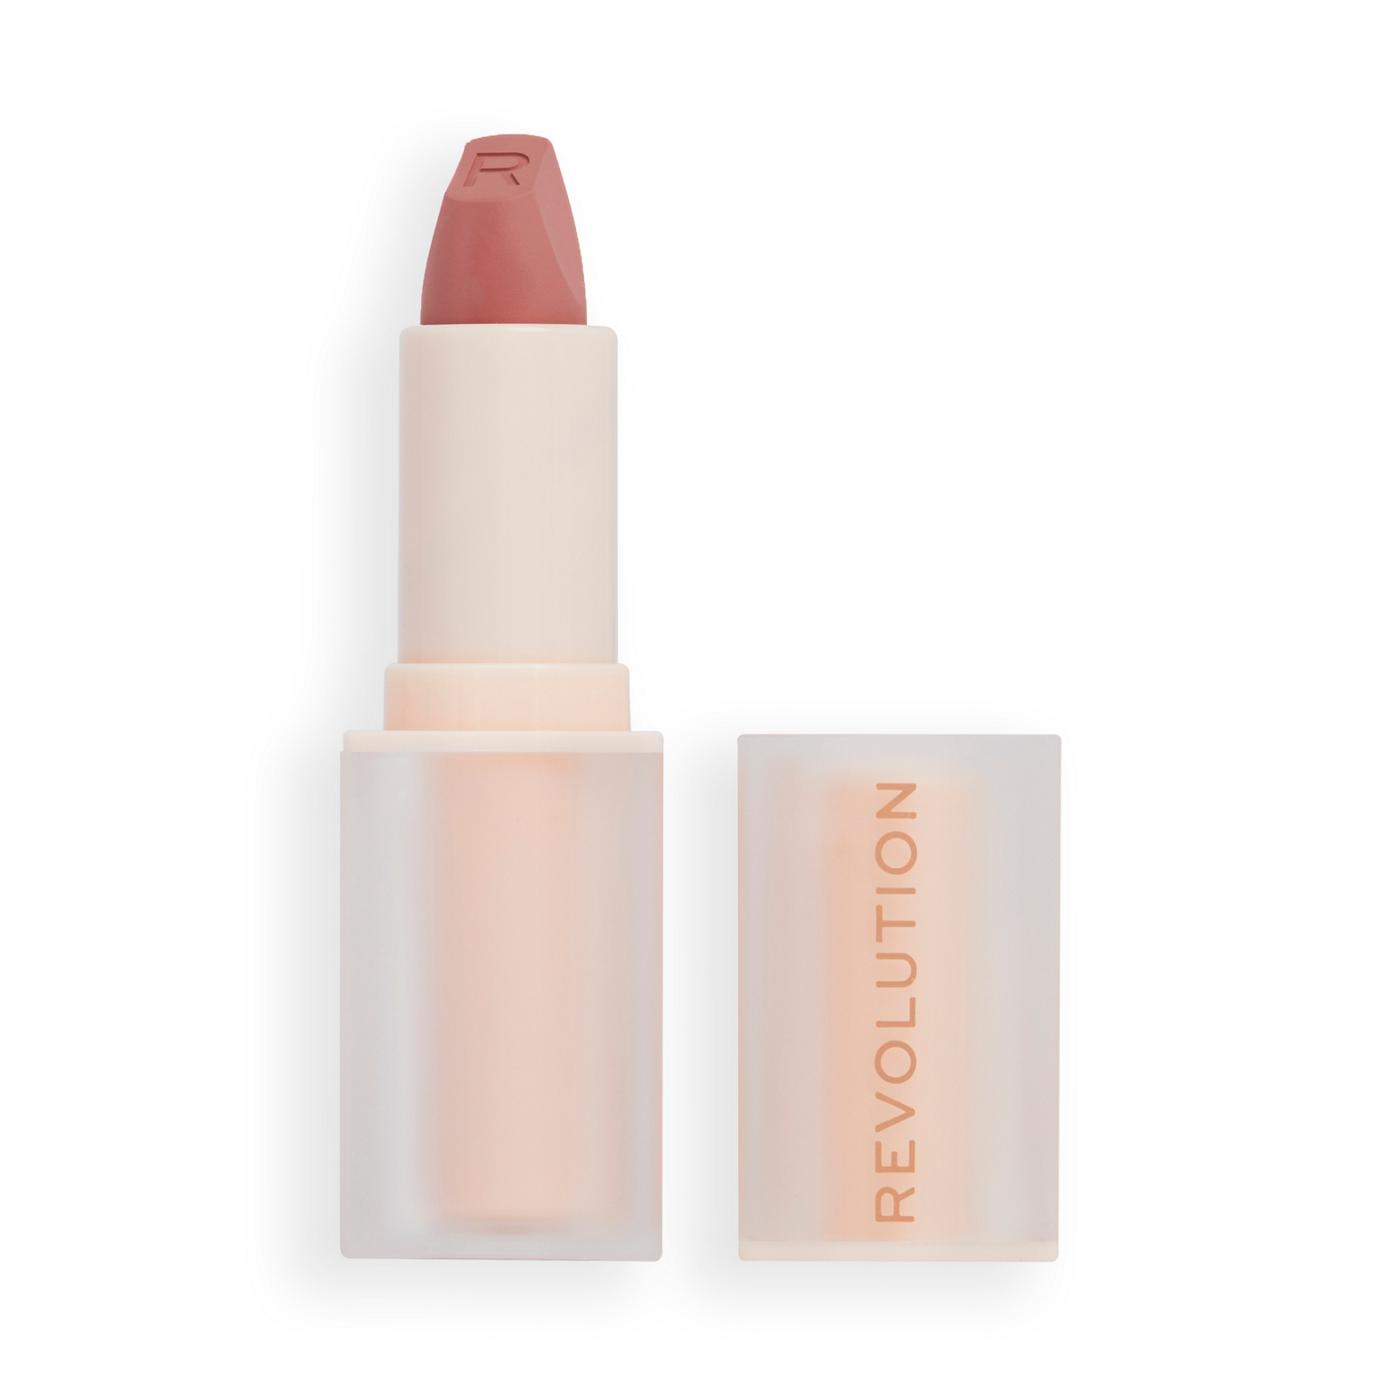 Makeup Revolution Lip Allure Soft Satin Lipstick - Brunch Pink Nude; image 3 of 3